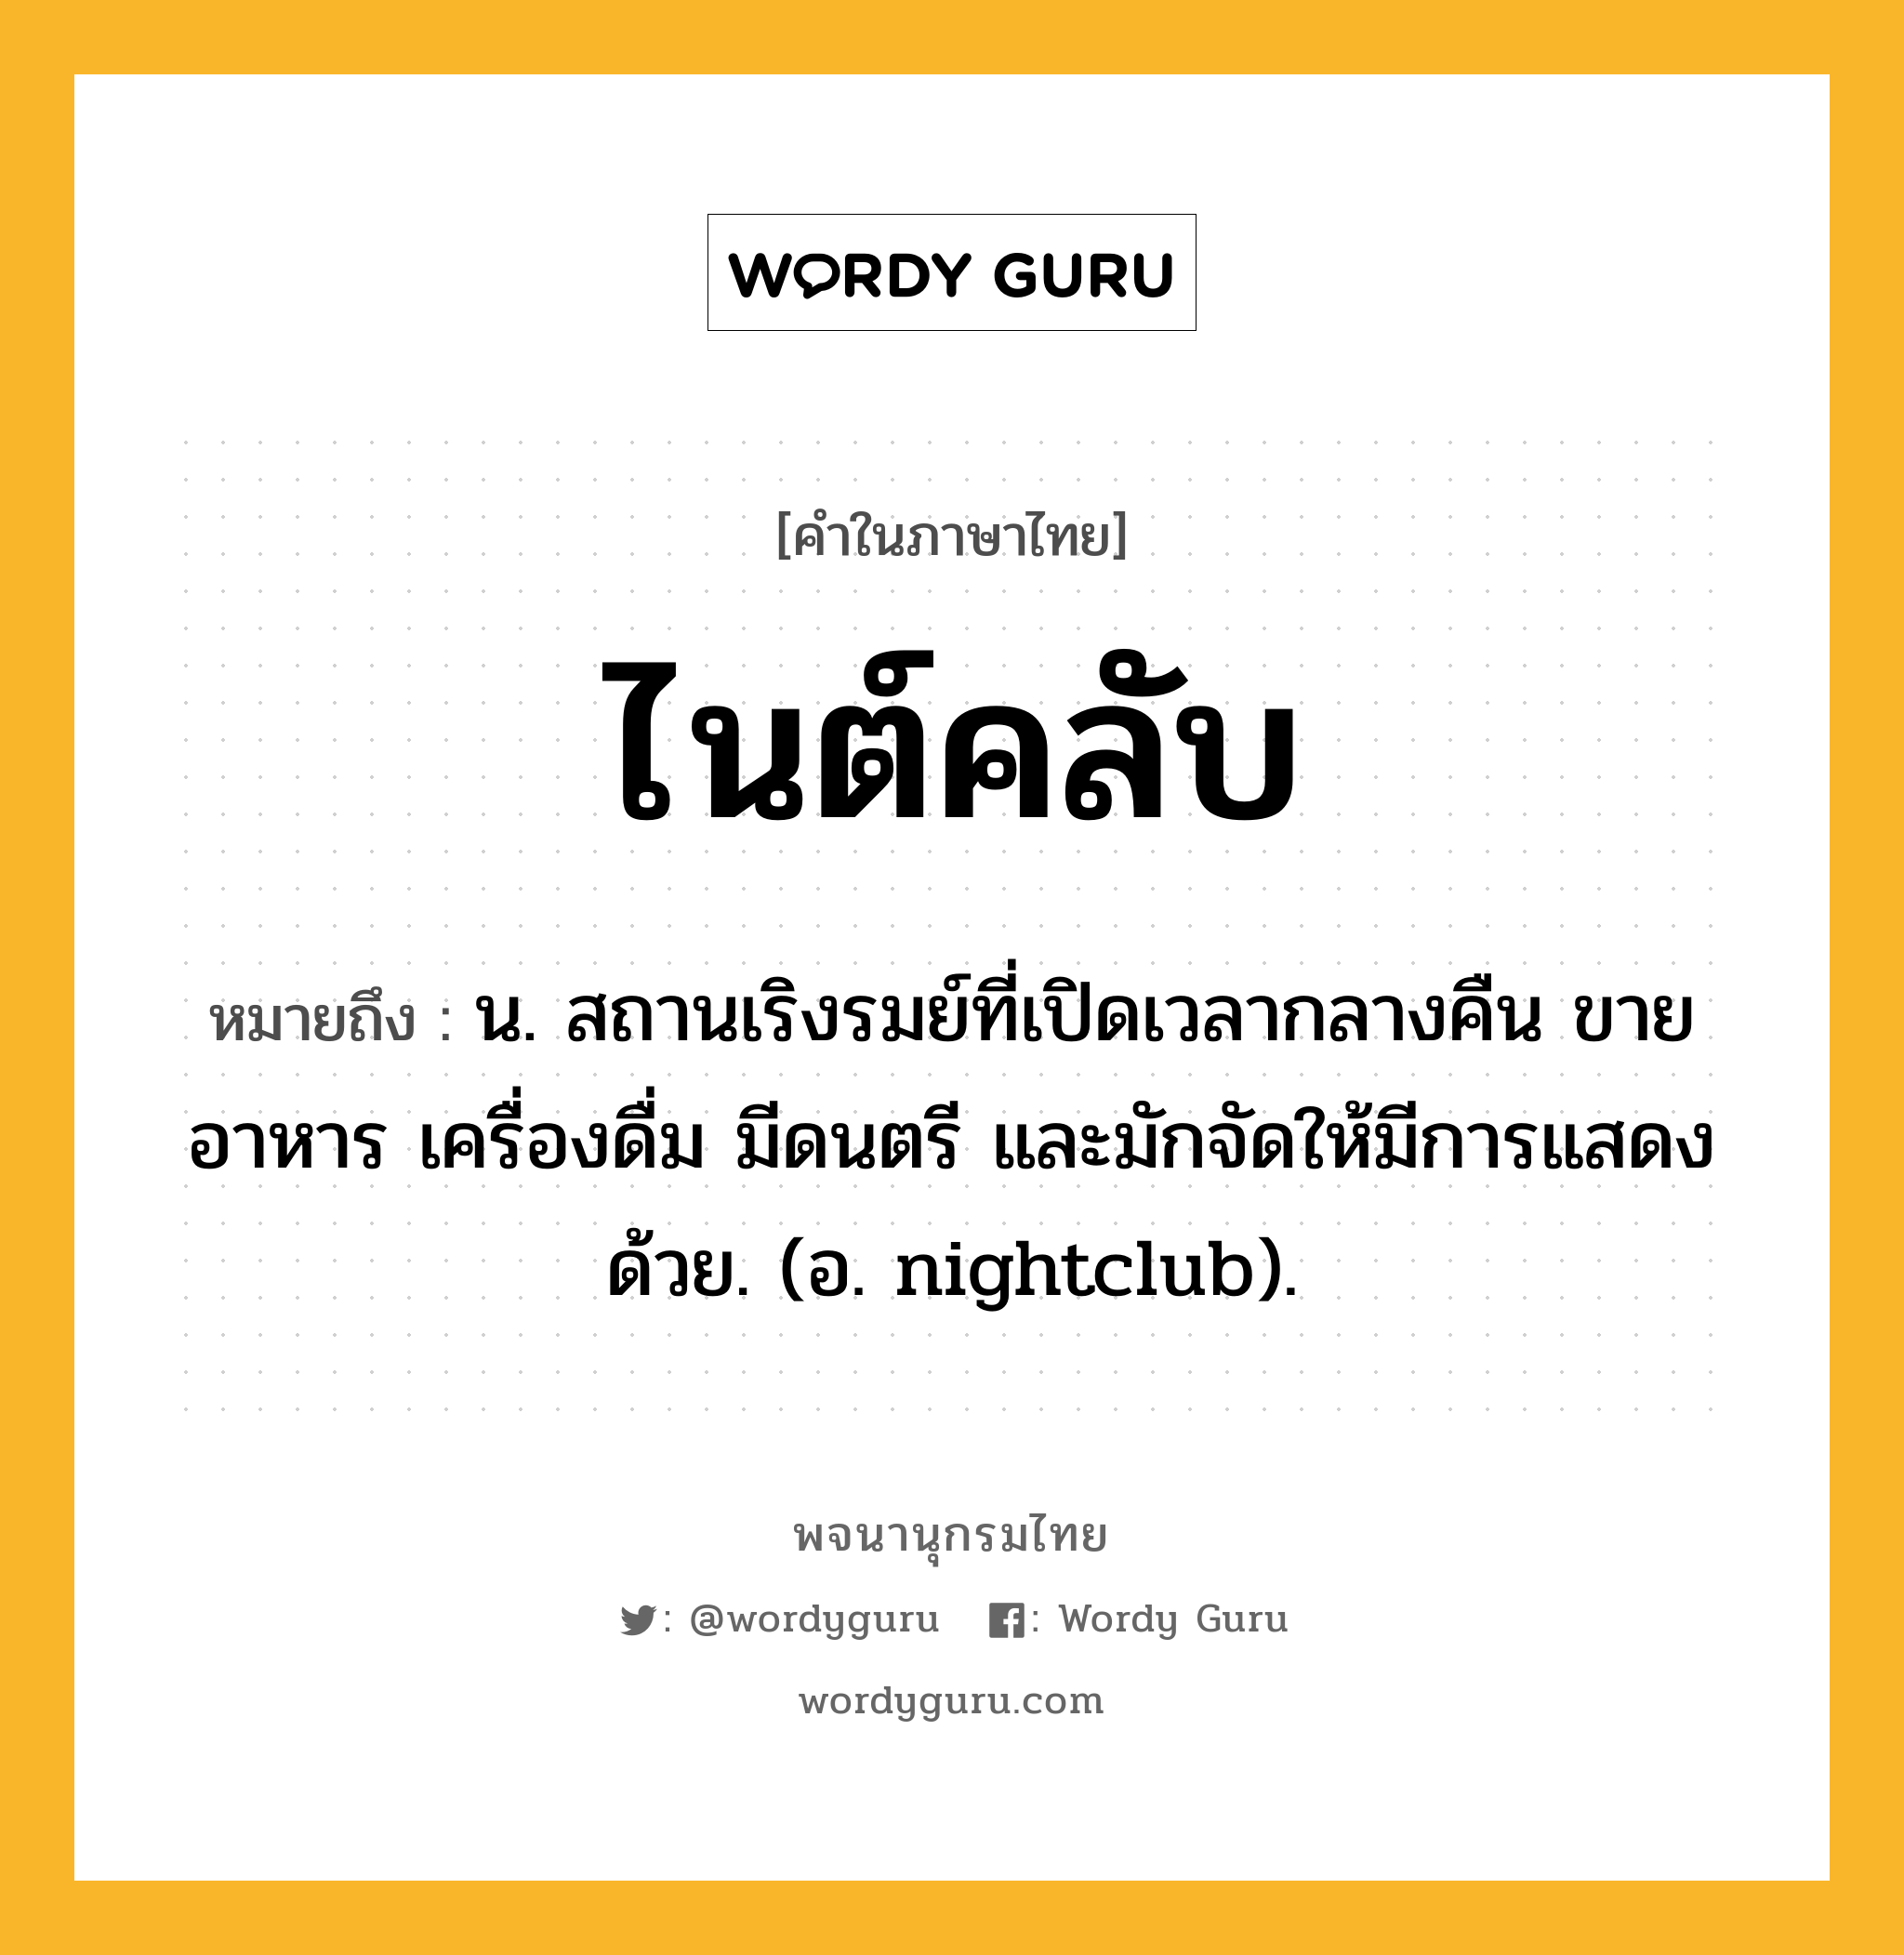 ไนต์คลับ หมายถึงอะไร?, คำในภาษาไทย ไนต์คลับ หมายถึง น. สถานเริงรมย์ที่เปิดเวลากลางคืน ขายอาหาร เครื่องดื่ม มีดนตรี และมักจัดให้มีการแสดงด้วย. (อ. nightclub).